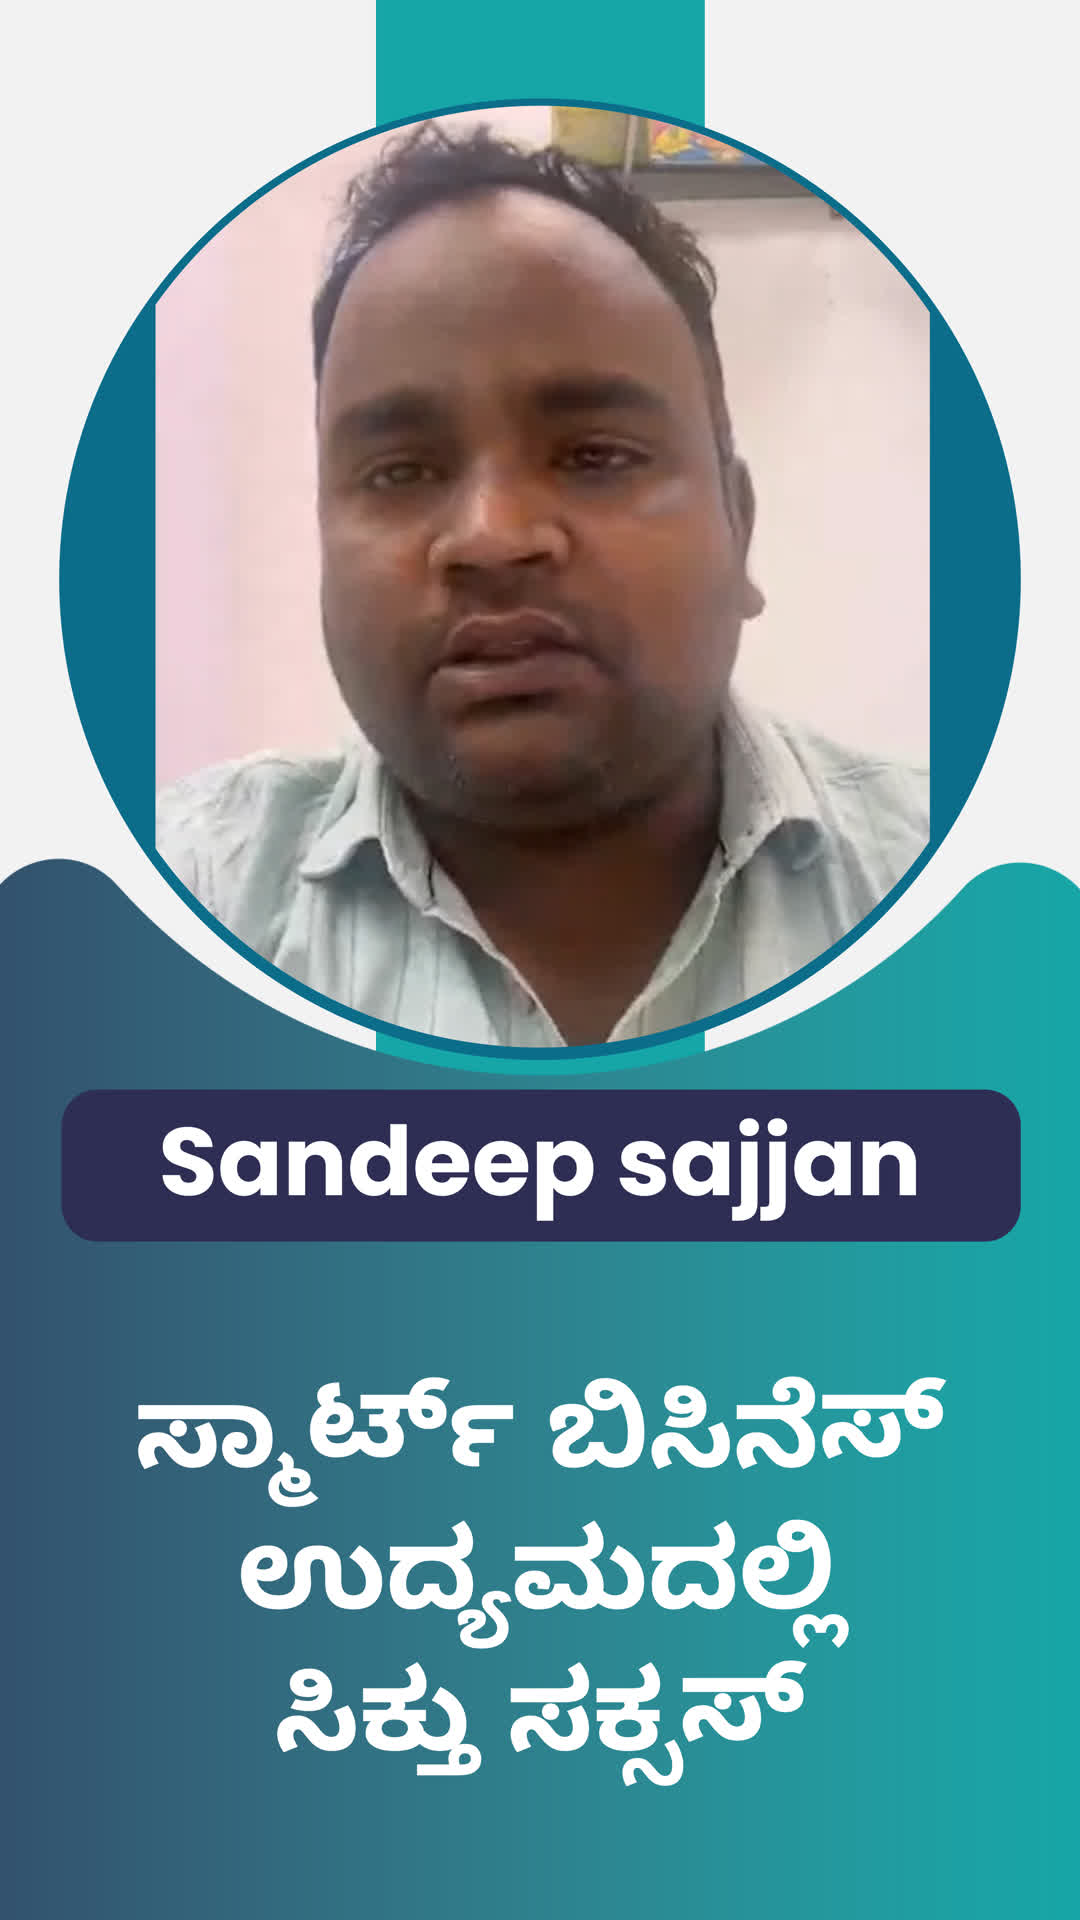 sandeep kumar Sajjan's Honest Review of ffreedom app - Raichur ,Karnataka